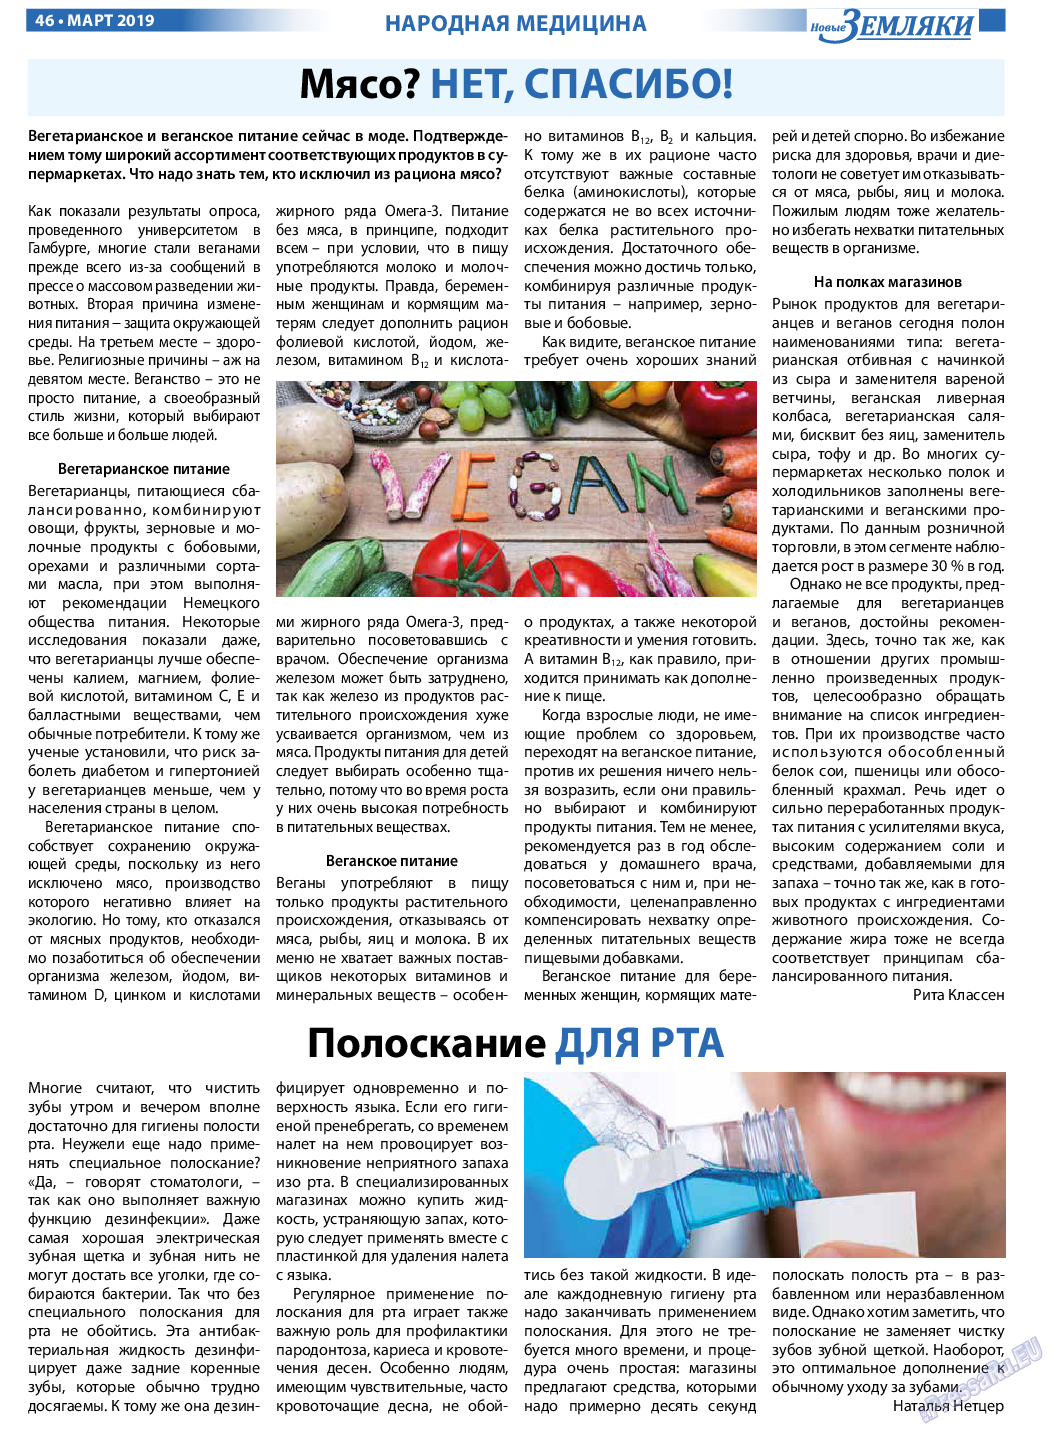 Новые Земляки, газета. 2019 №3 стр.46